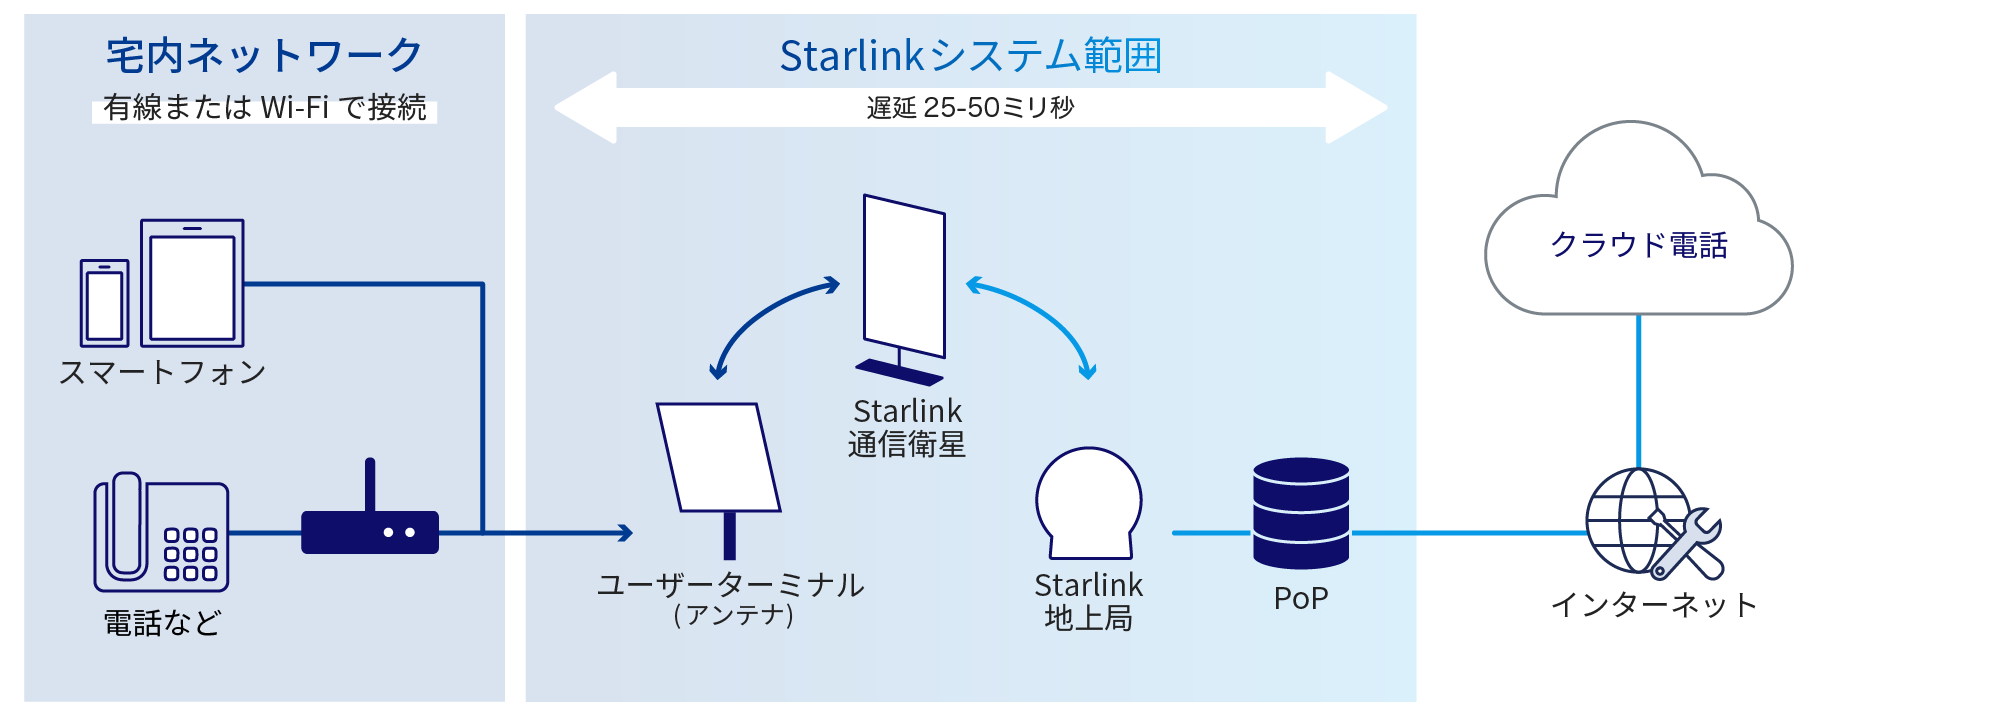 宅内ネットワーク (有線またはWi-Fiで接続) から、Starlinkシステム範囲 (遅延: 25～50ミリ秒) を通過し、インターネットからクラウド電話の利用を実現。